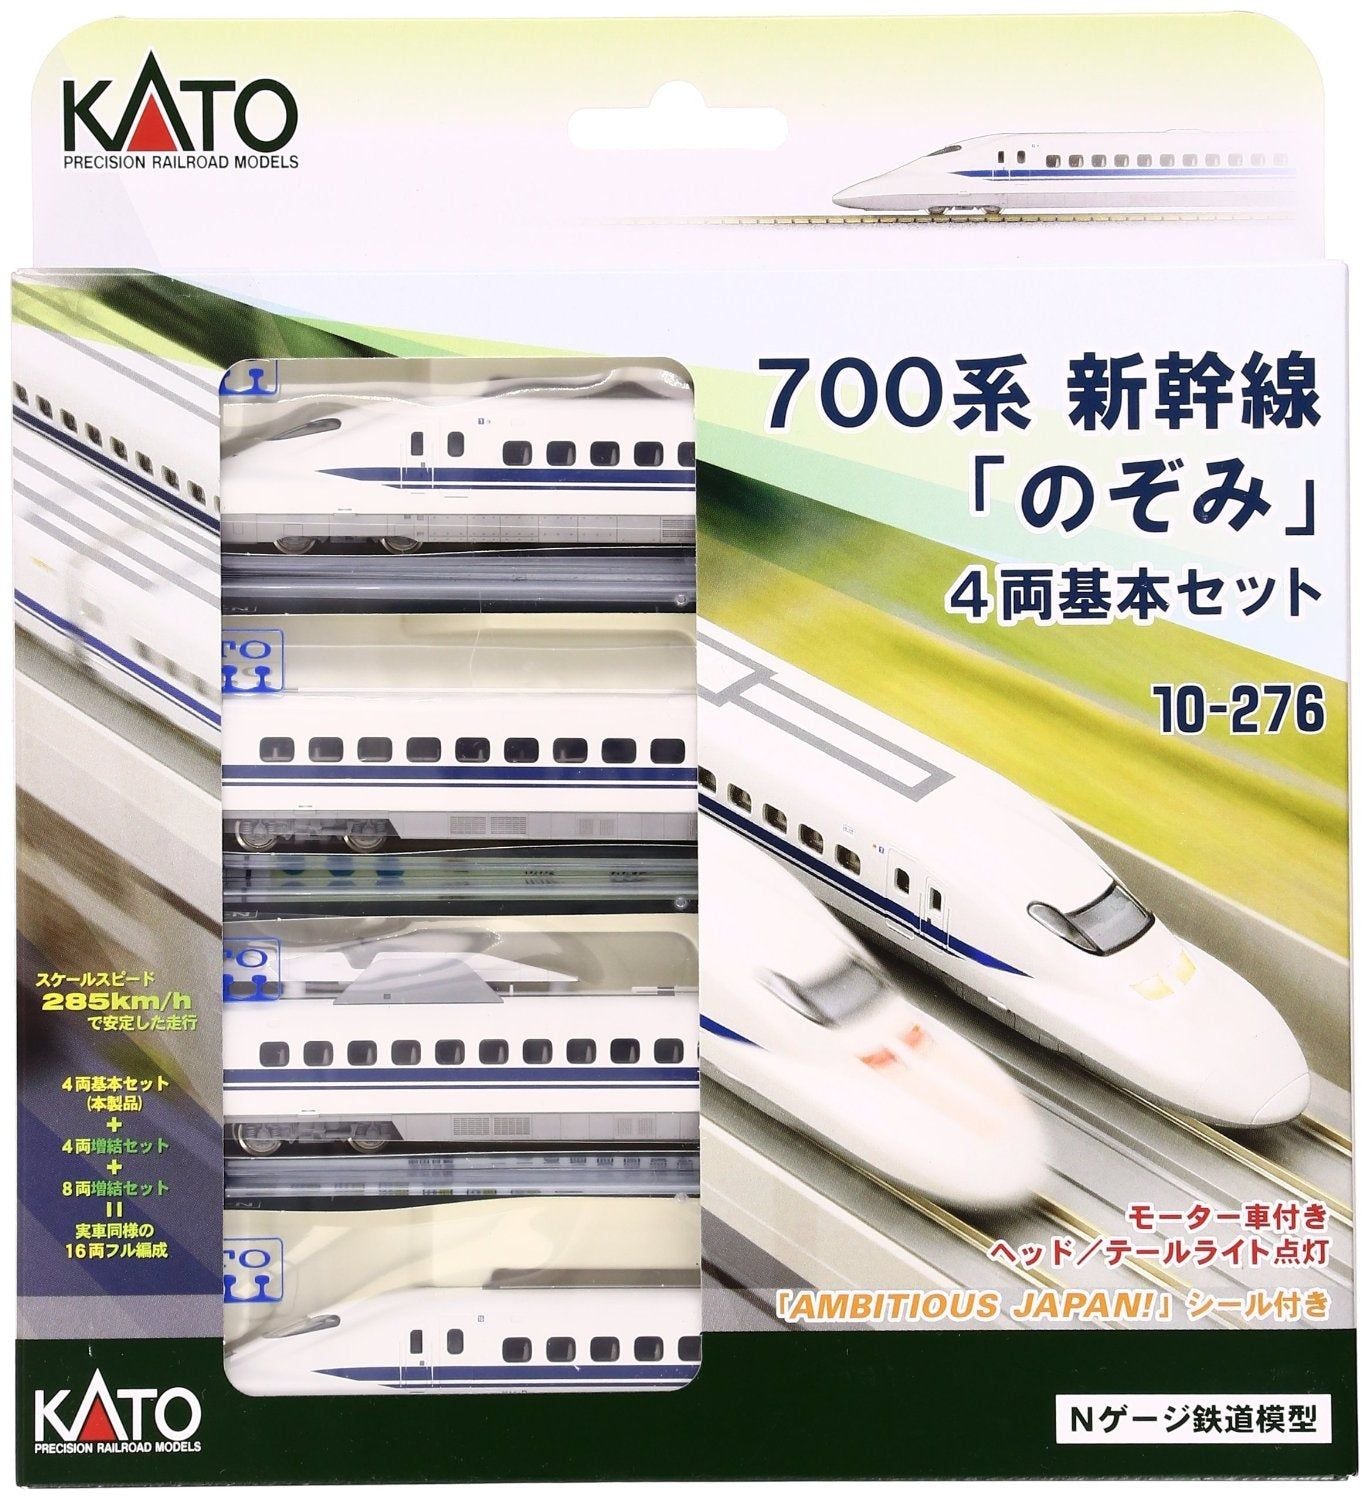 KATO 10-276 Series 700 Nozomi Shinkansen 4 Car Set - BanzaiHobby